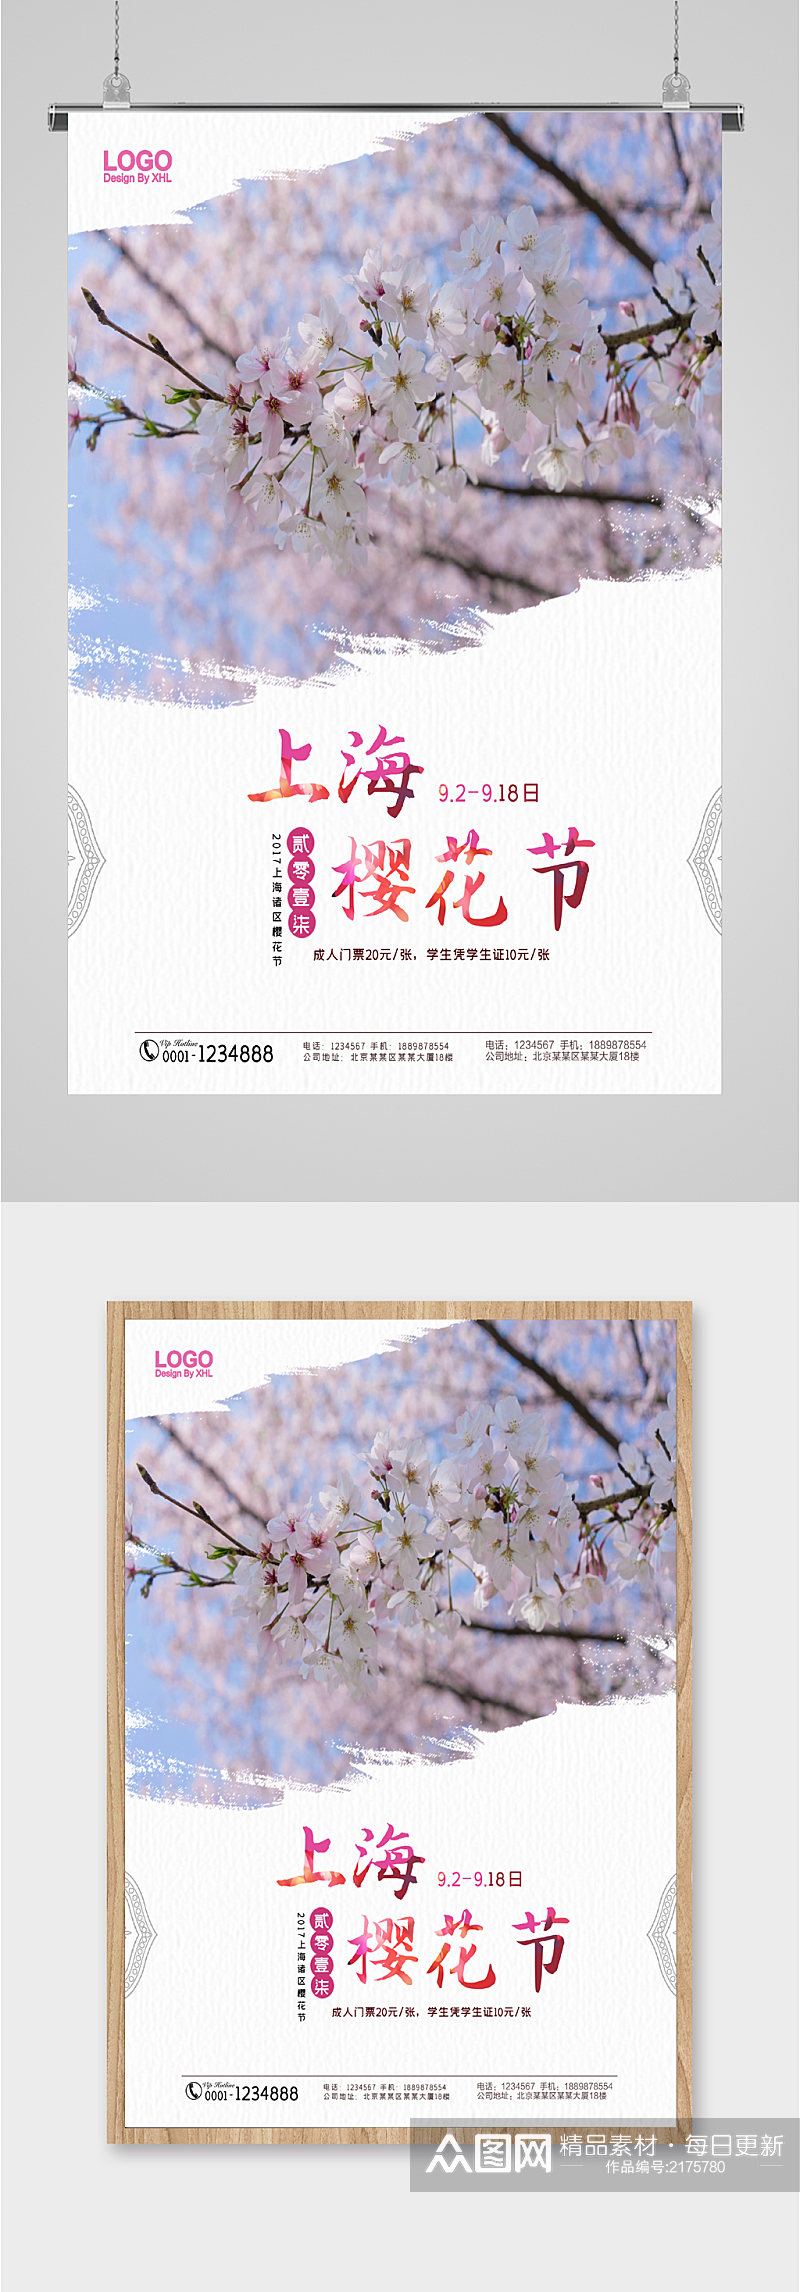 上海樱花节赏樱海报素材